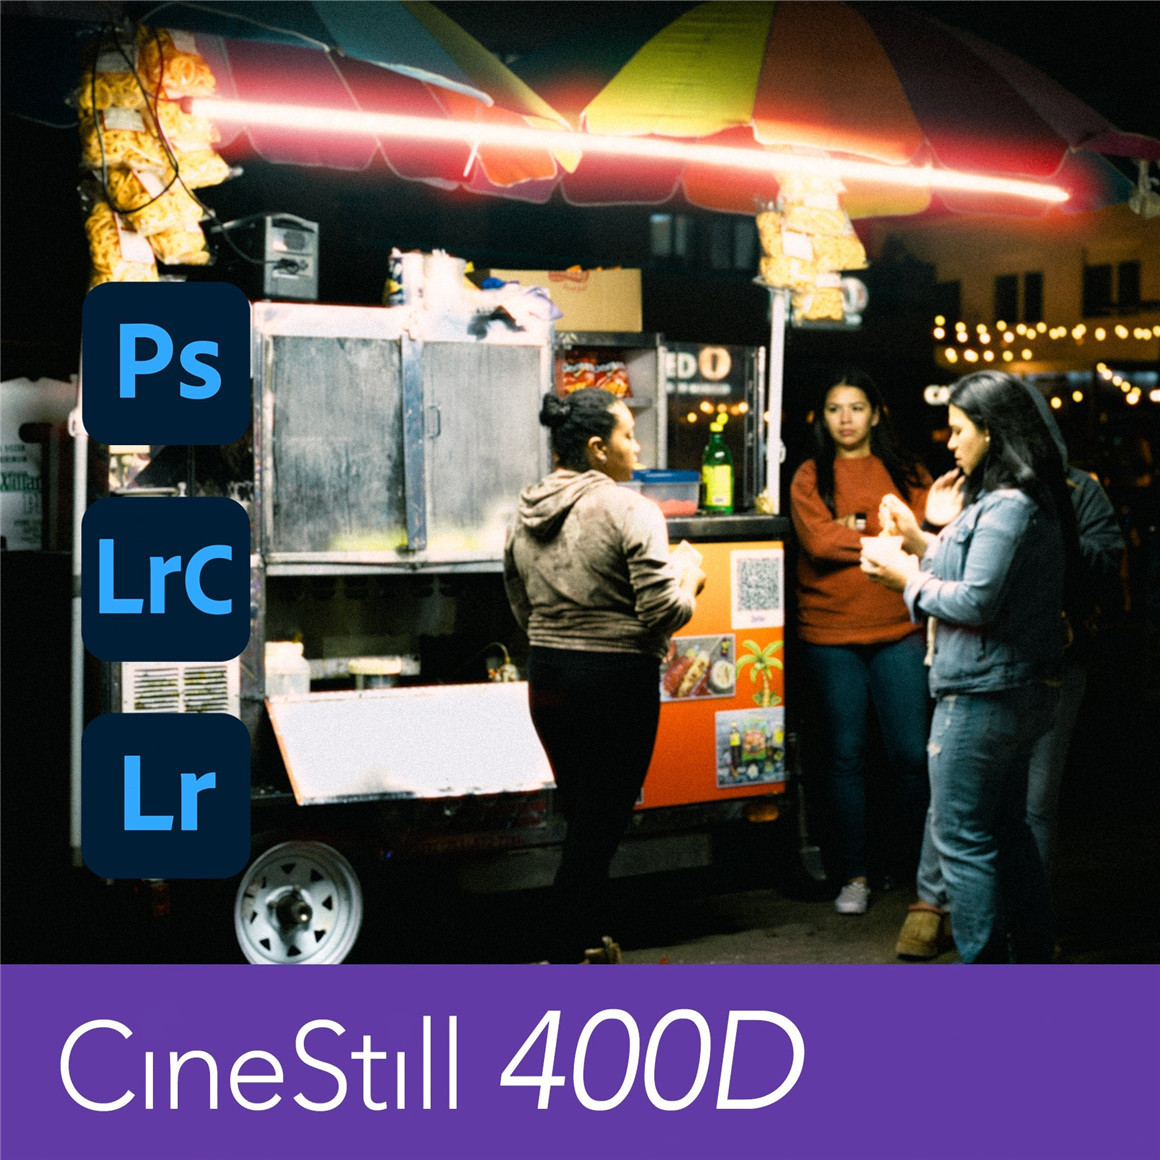 复古柯达CineStill 400D胶片电影仿真模拟LR预设 CineStill 400D Film Emulation Lightroom Preset 插件预设 第2张